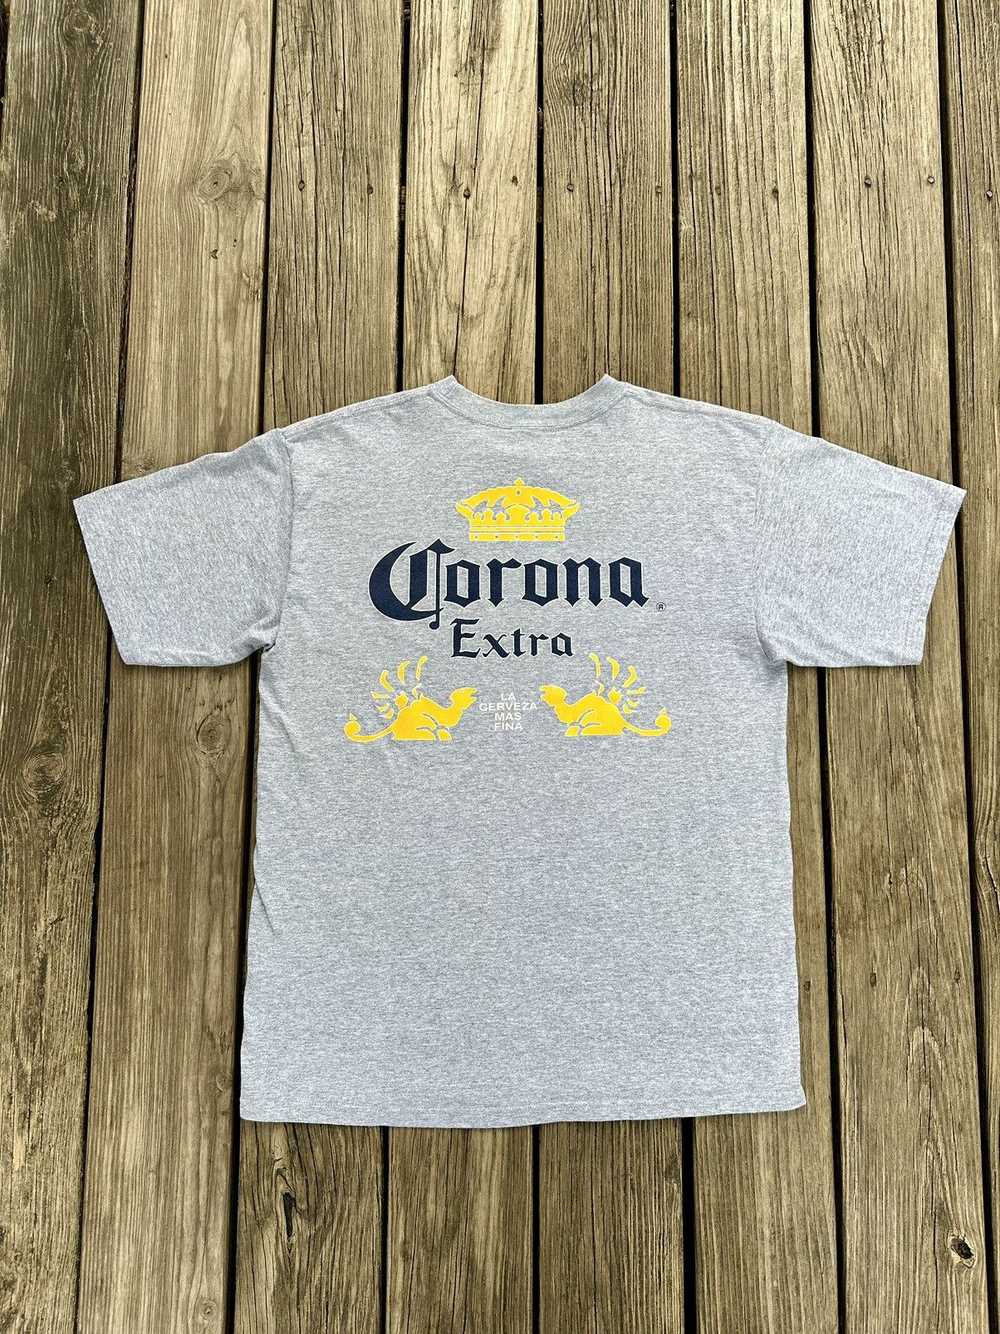 Corona Corona Extra Shirt - image 1